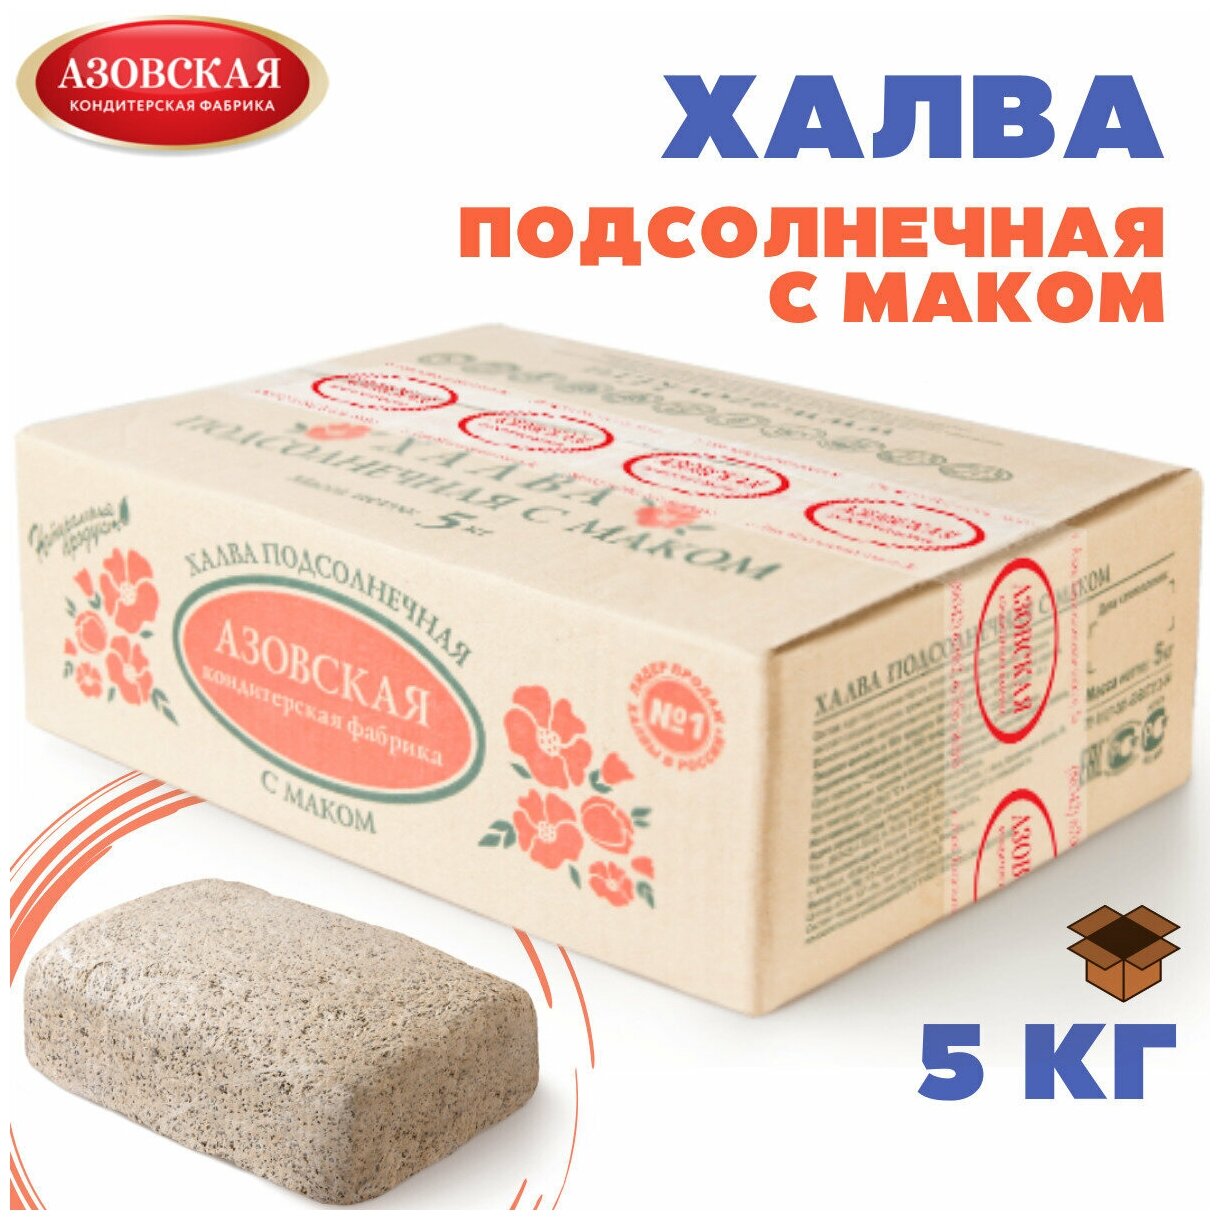 Халва подсолнечная с маком, 5 кг , Азовская кондитерская фабрика